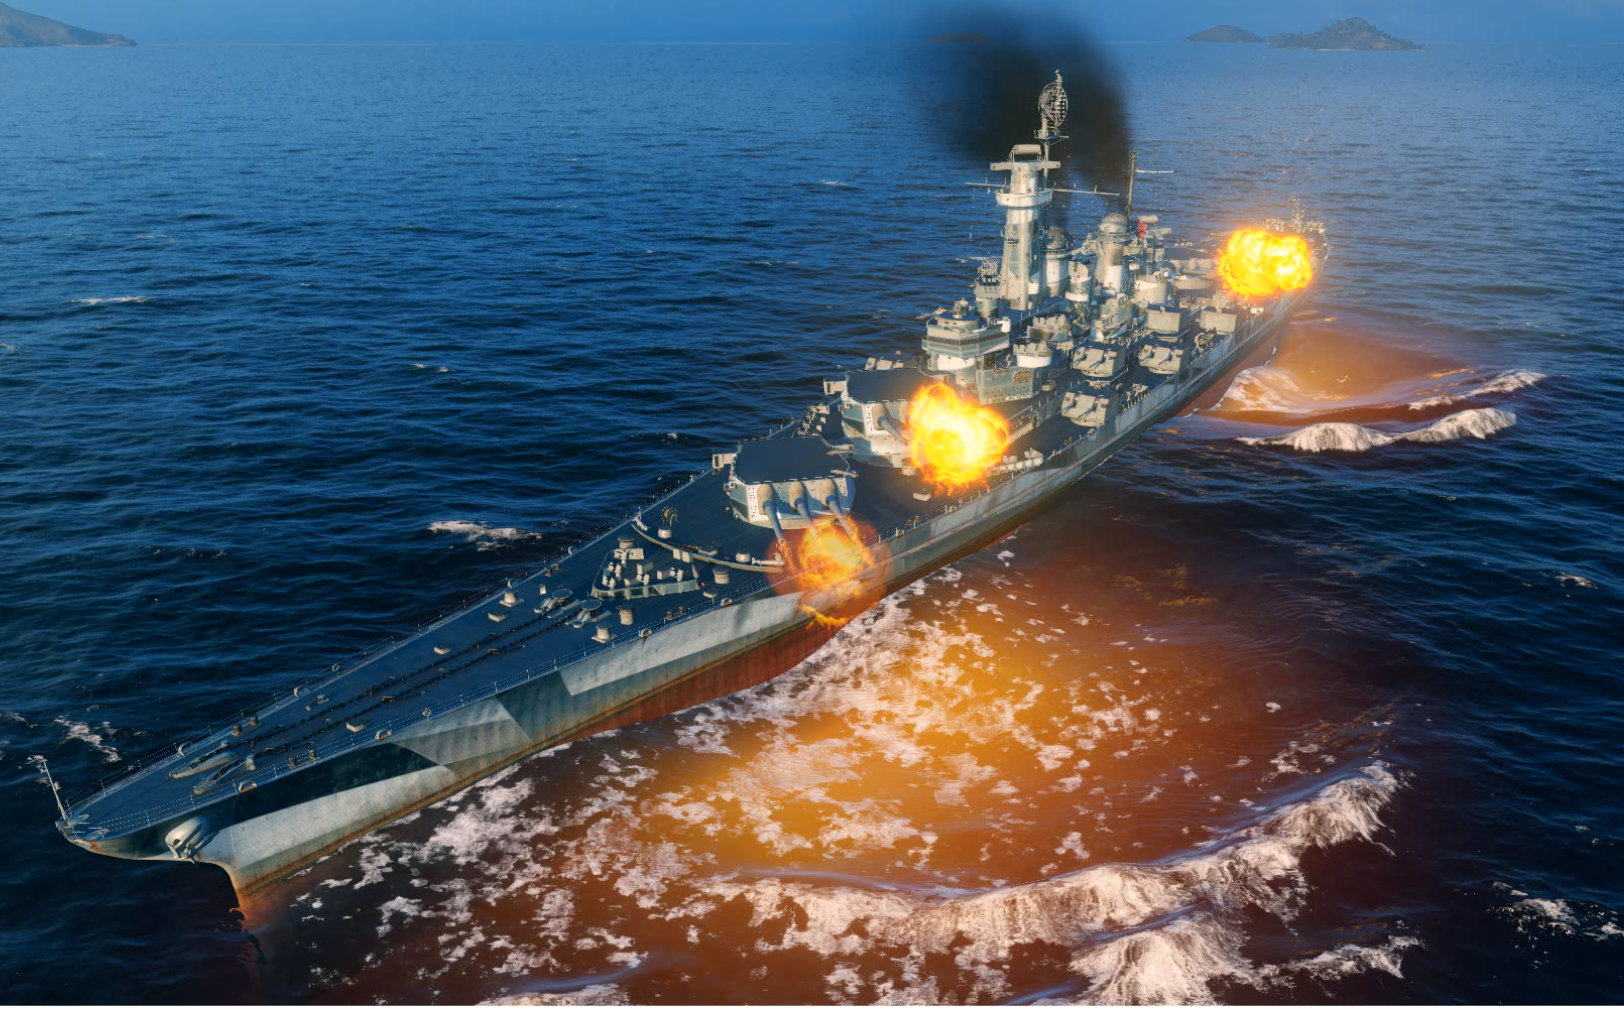 【战舰世界】美系顶级战列舰蒙大拿——驰骋于海面上的机动杀手!